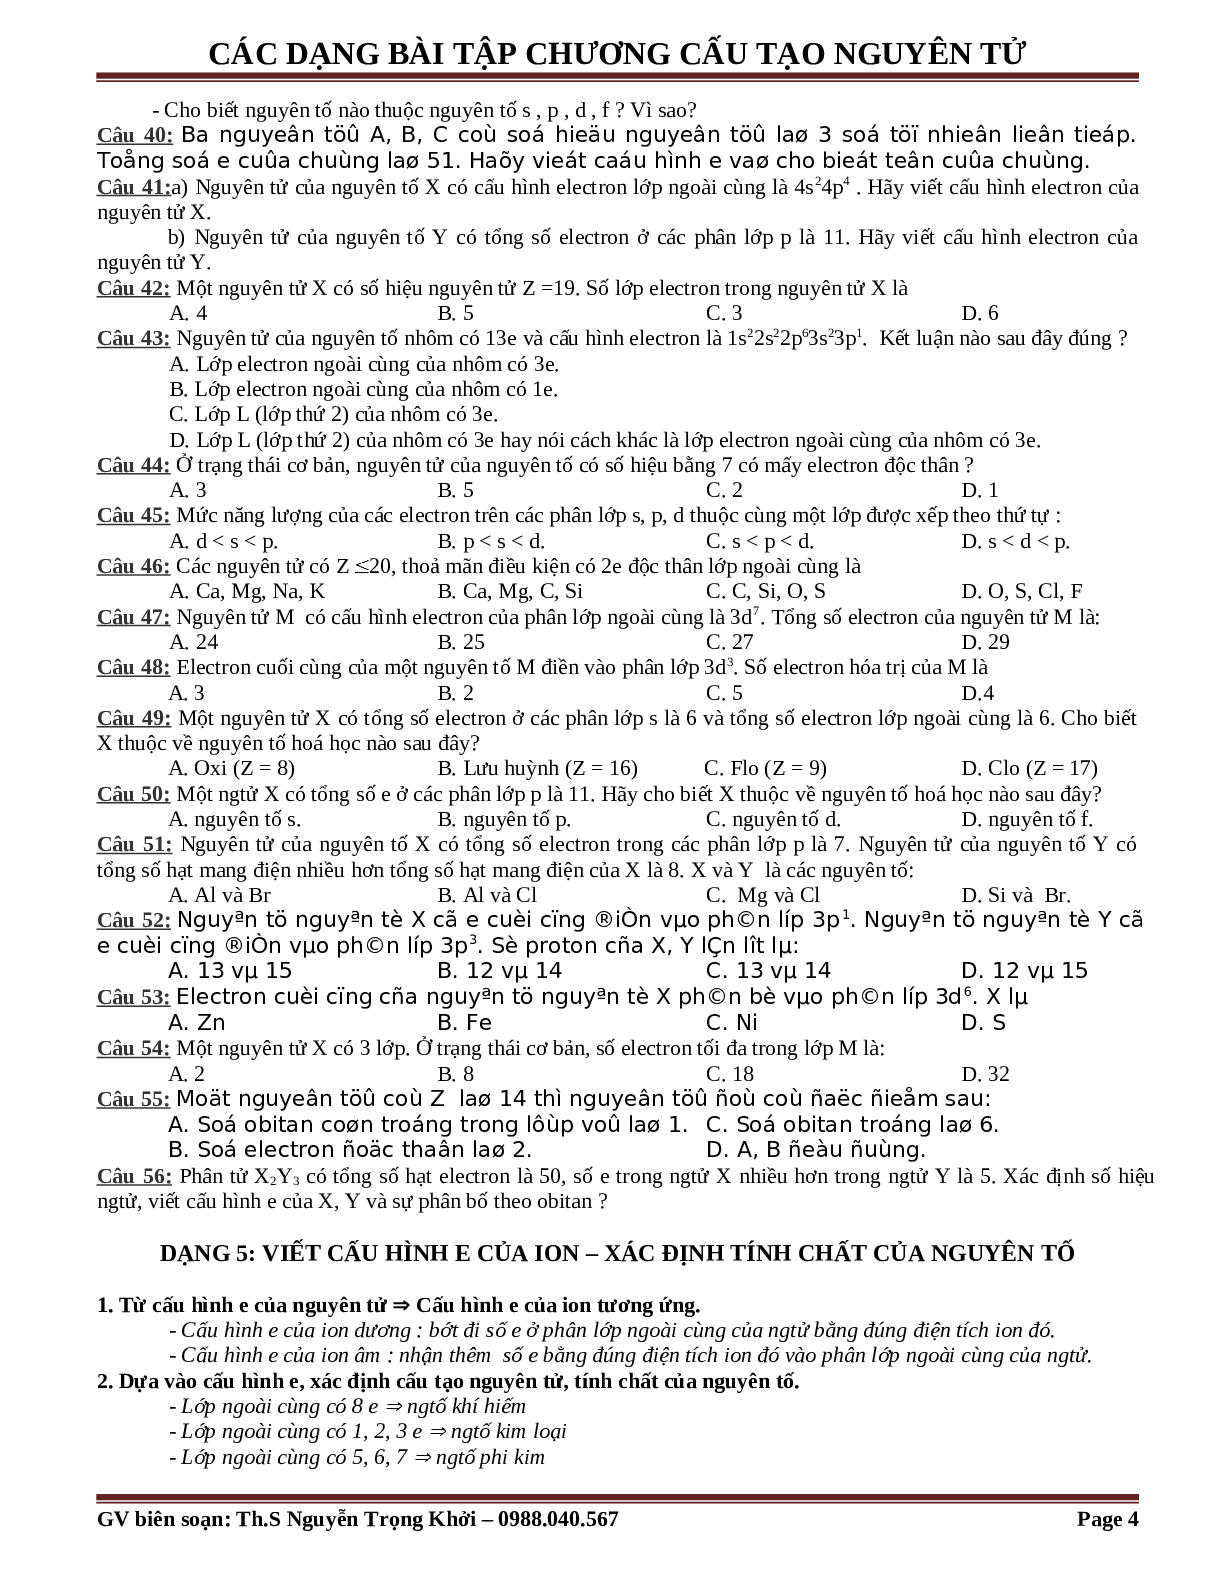 Bài tập về cấu tạo nguyên tử cơ bản, nâng cao (trang 4)